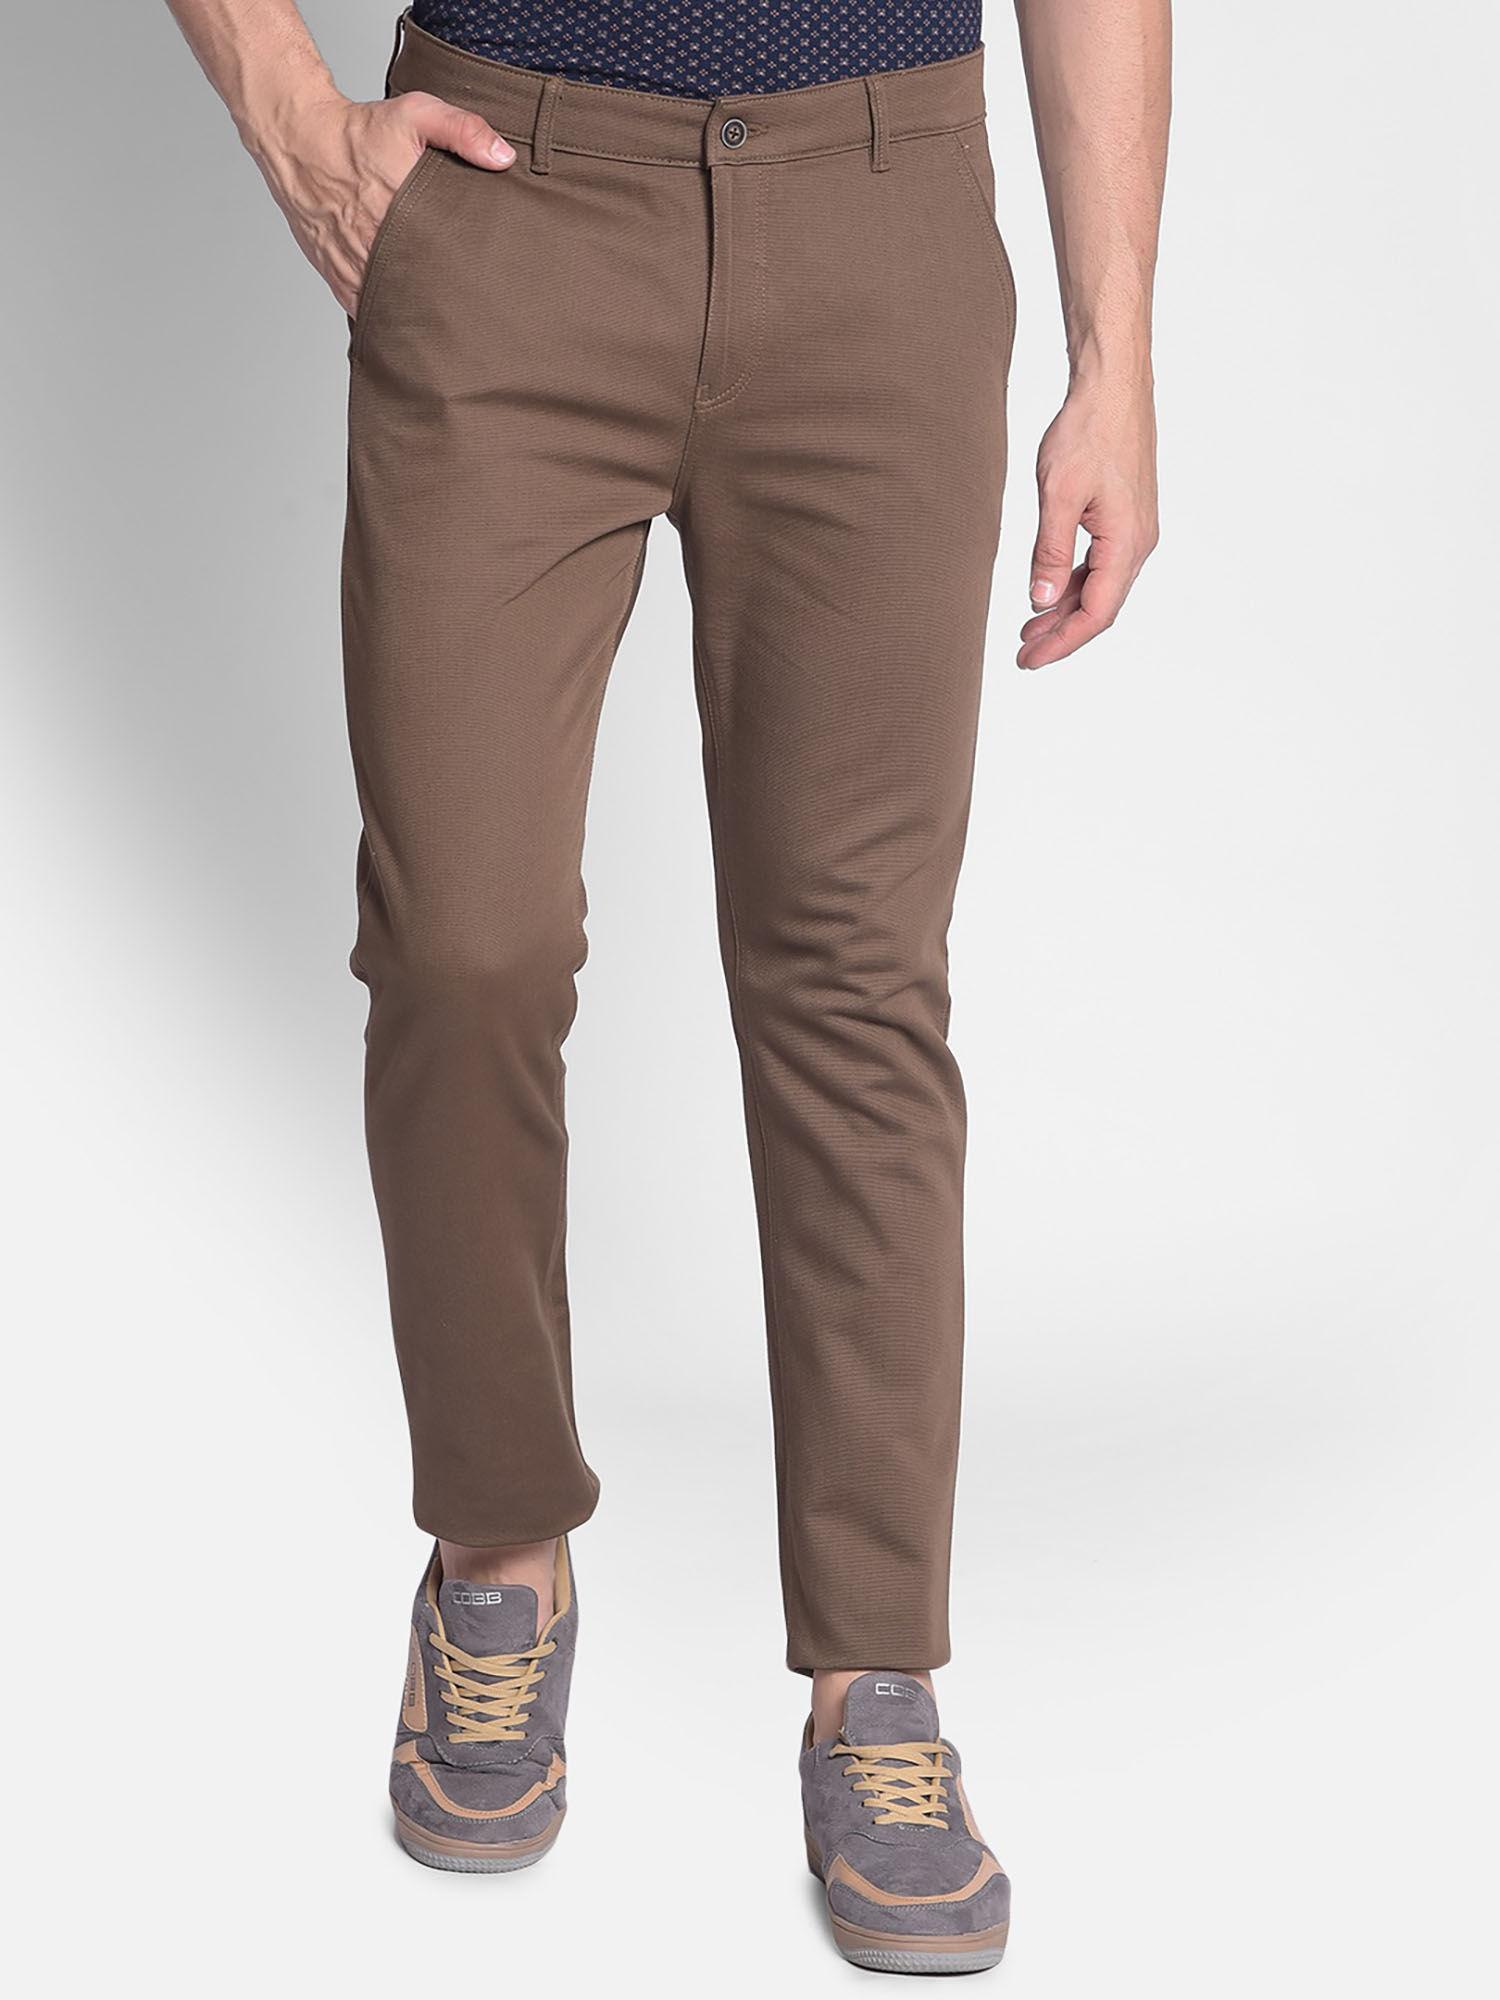 mens brown trouser